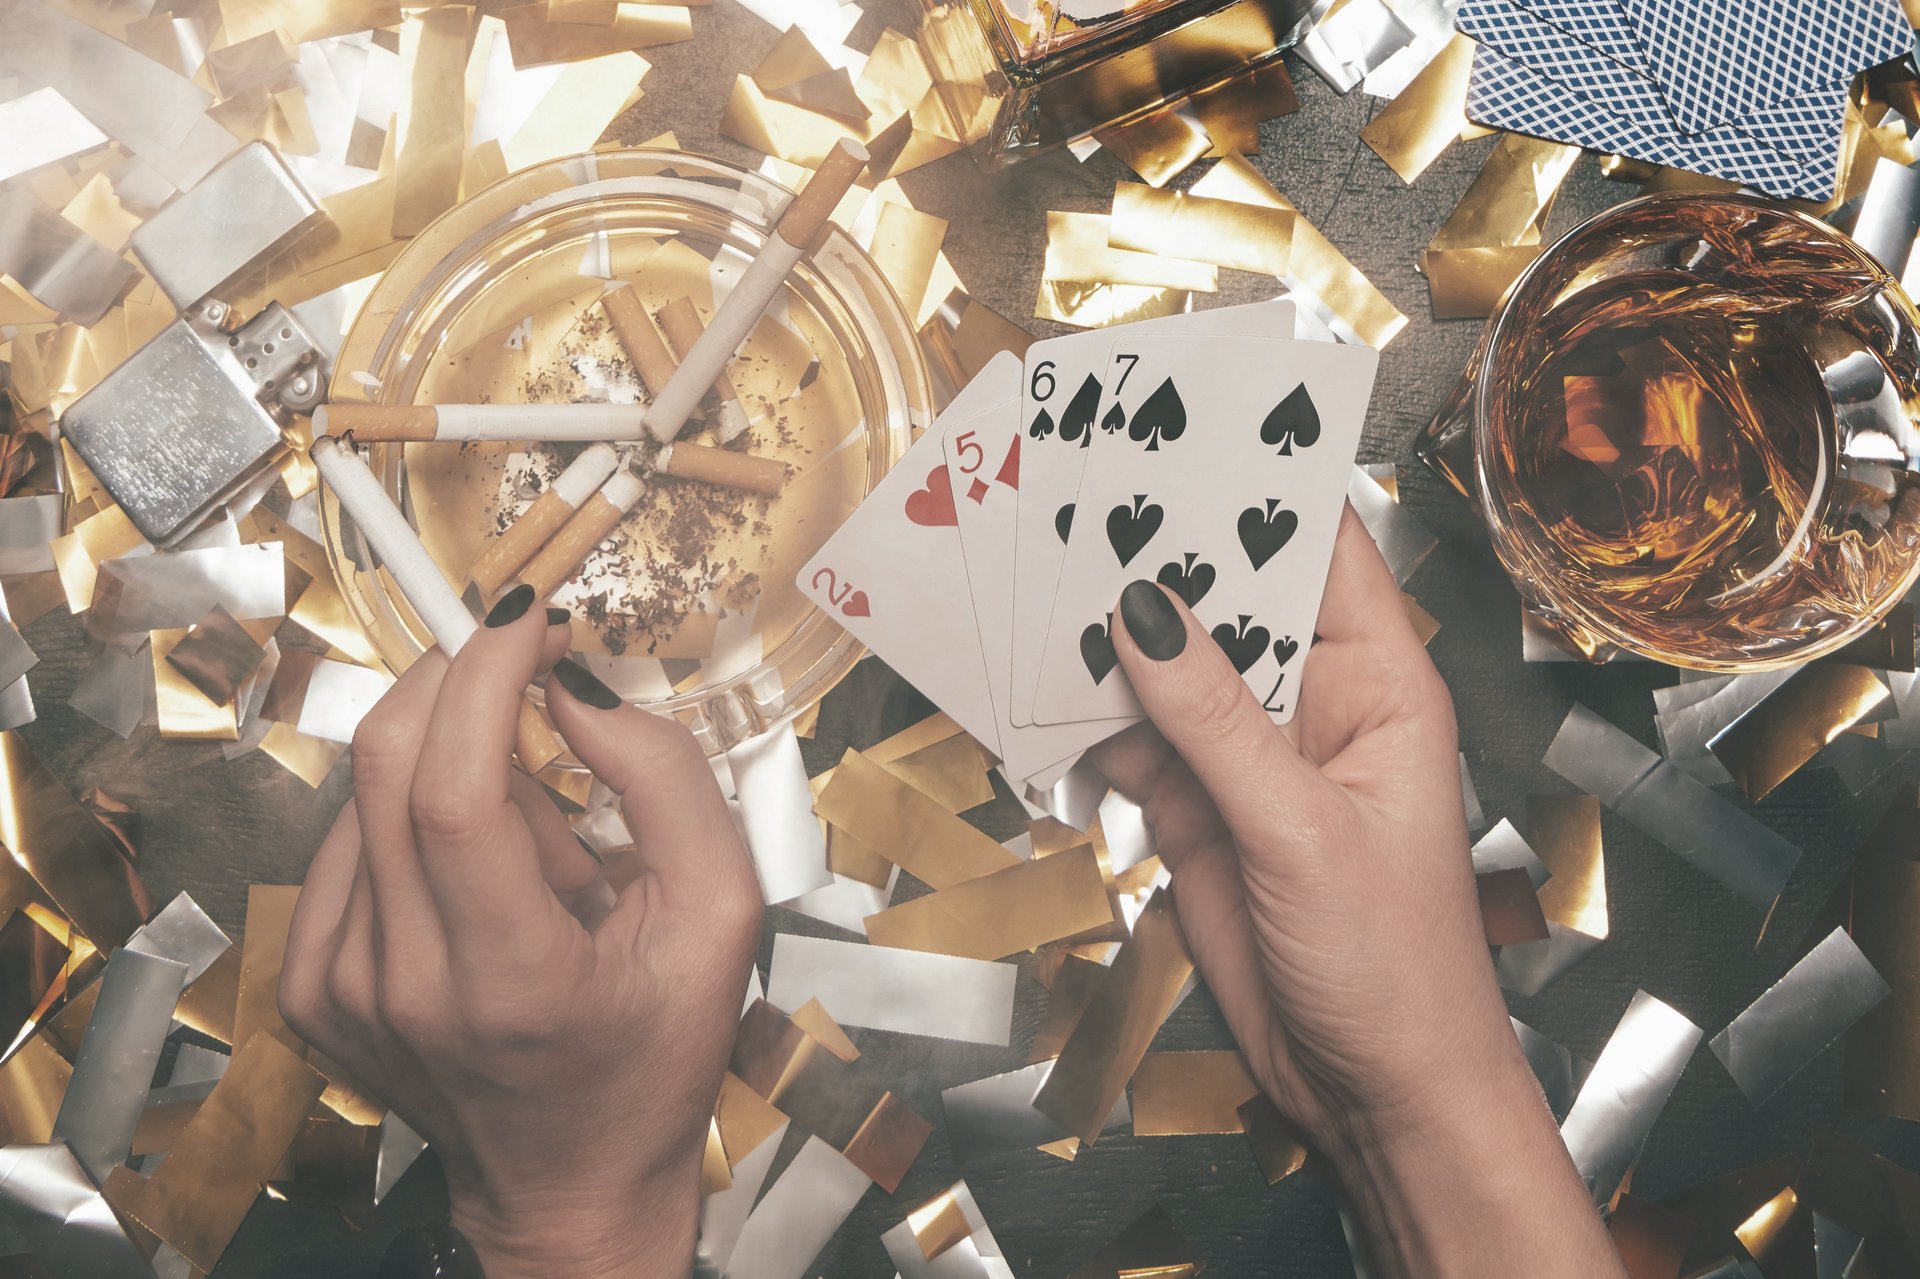 Der  Tisch voller Glitzer, Zigaretten, Whisky und Pokerkarten lockt mit vielen Versuchungen.